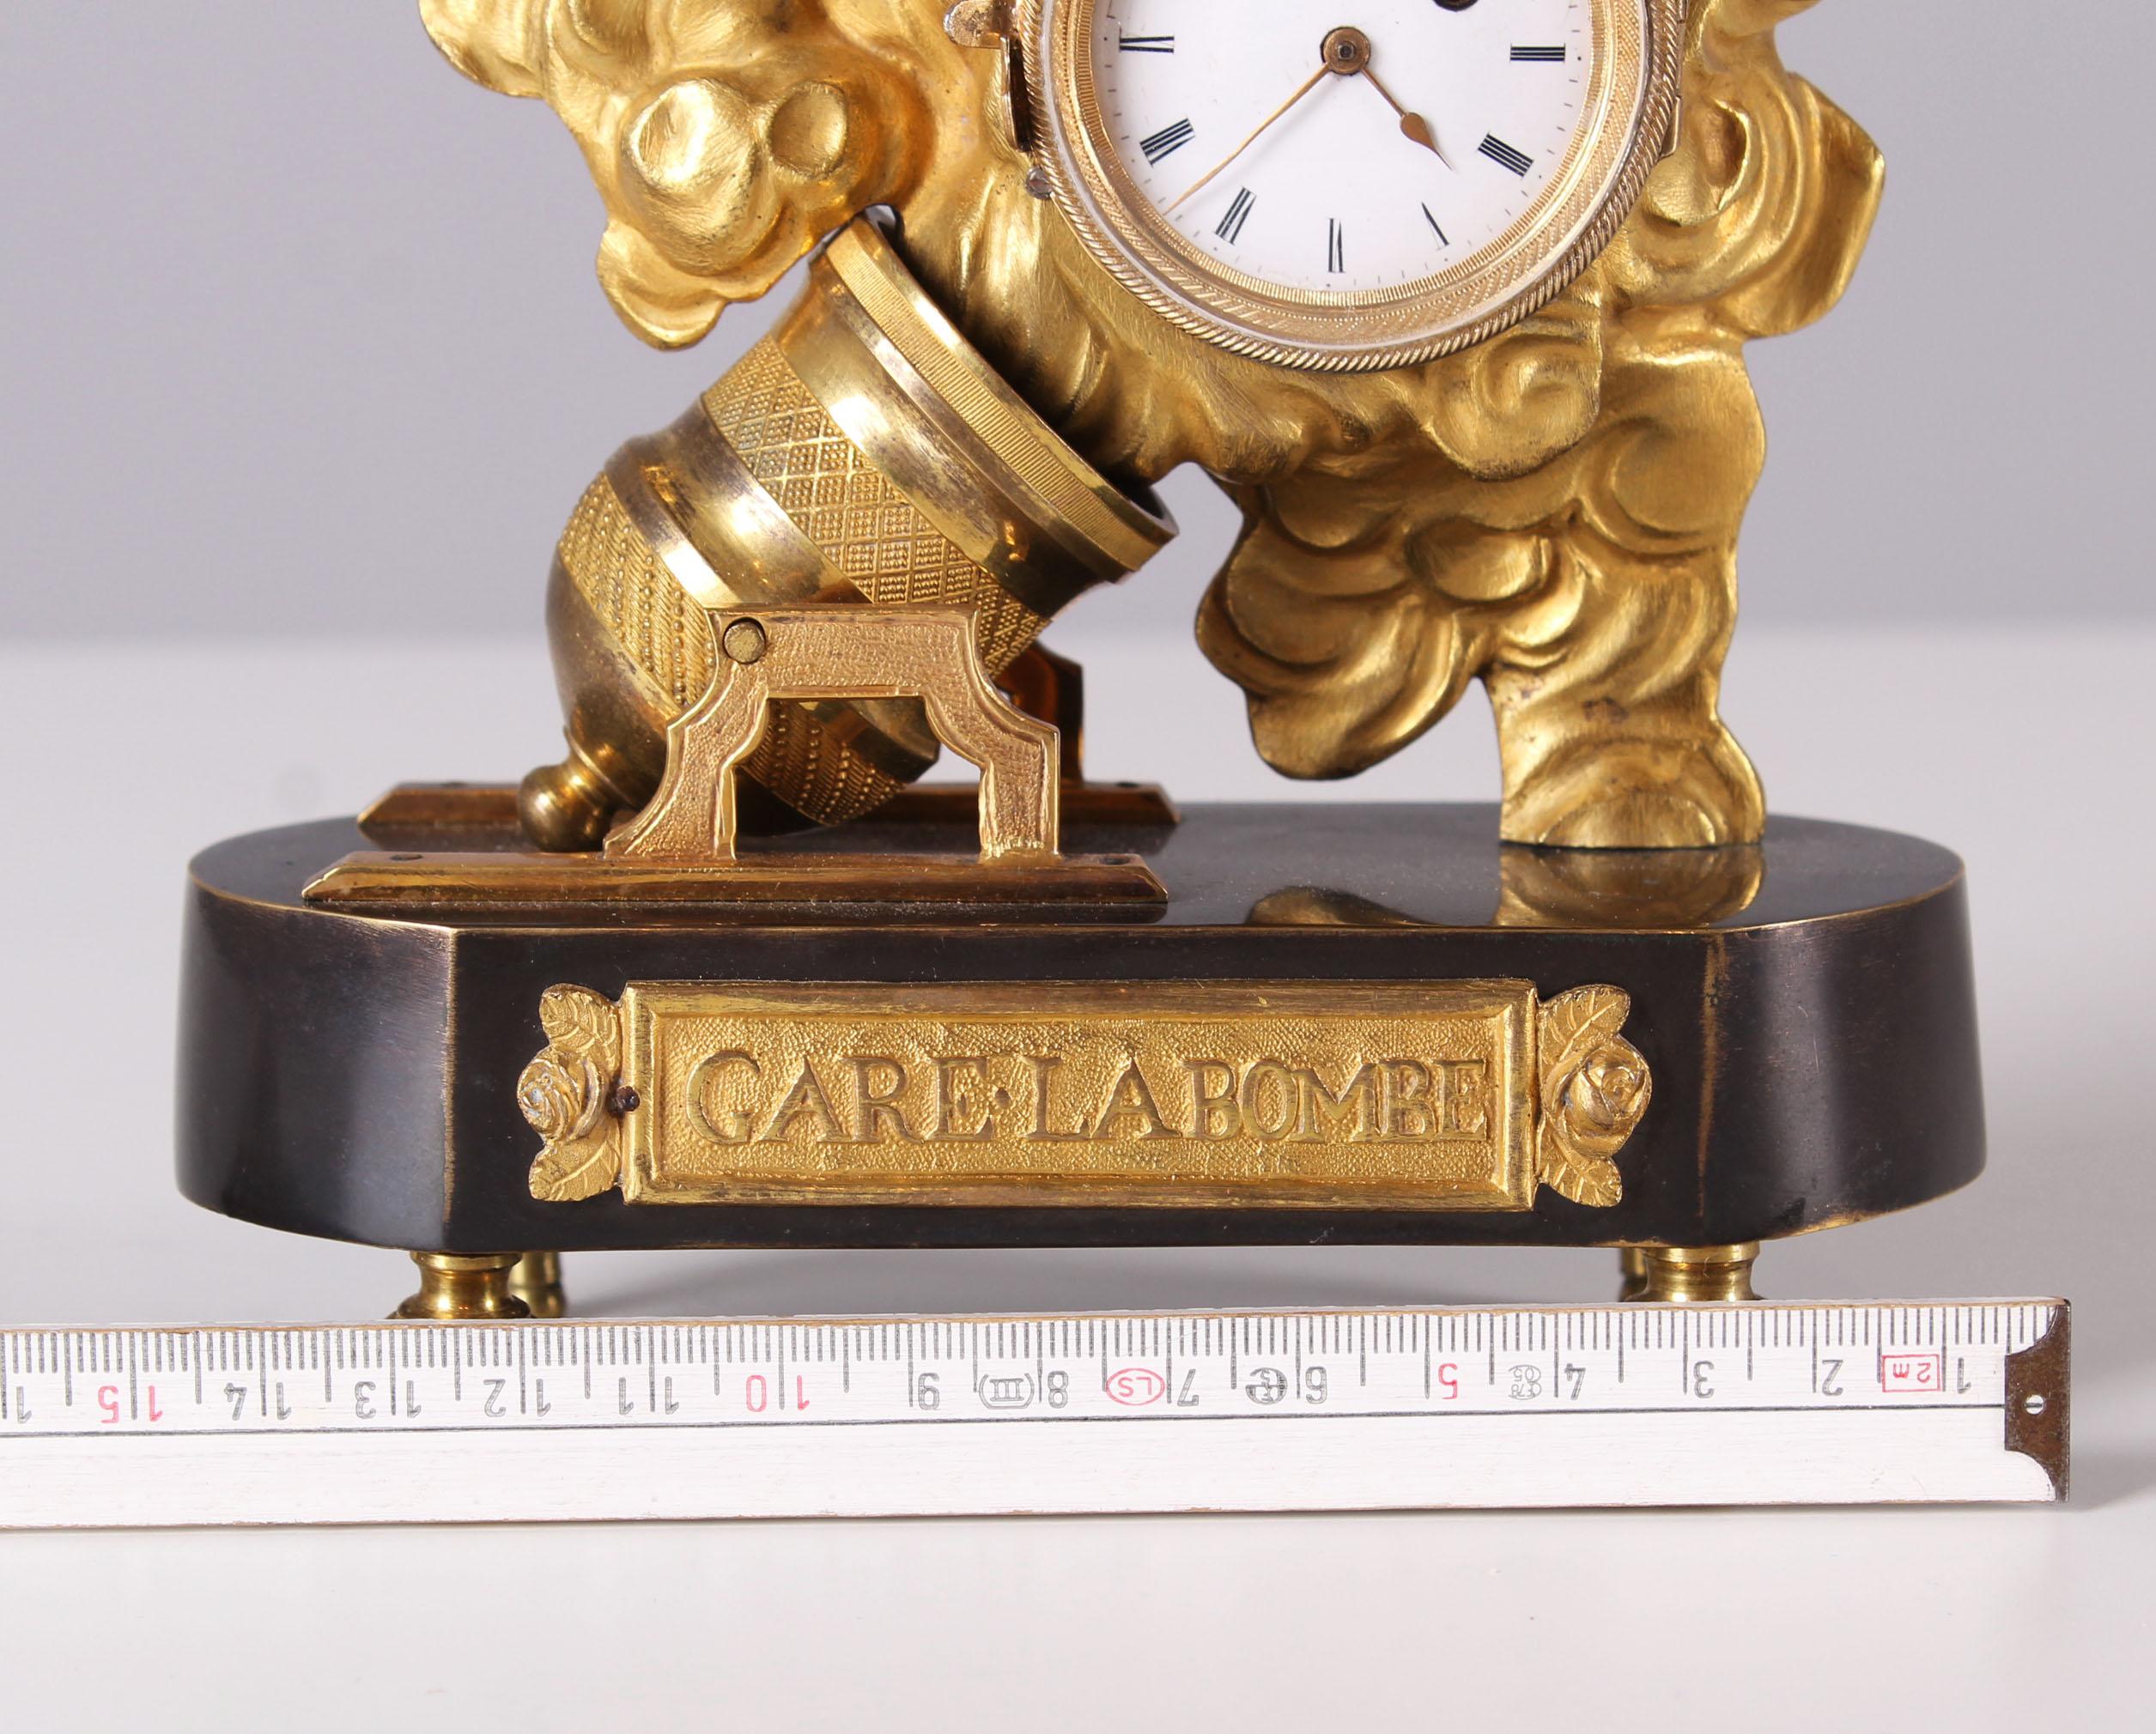 19th Century Miniatur Mantel Clock, Gare La Bombe, Cupido, France, Gilded Bronze For Sale 3